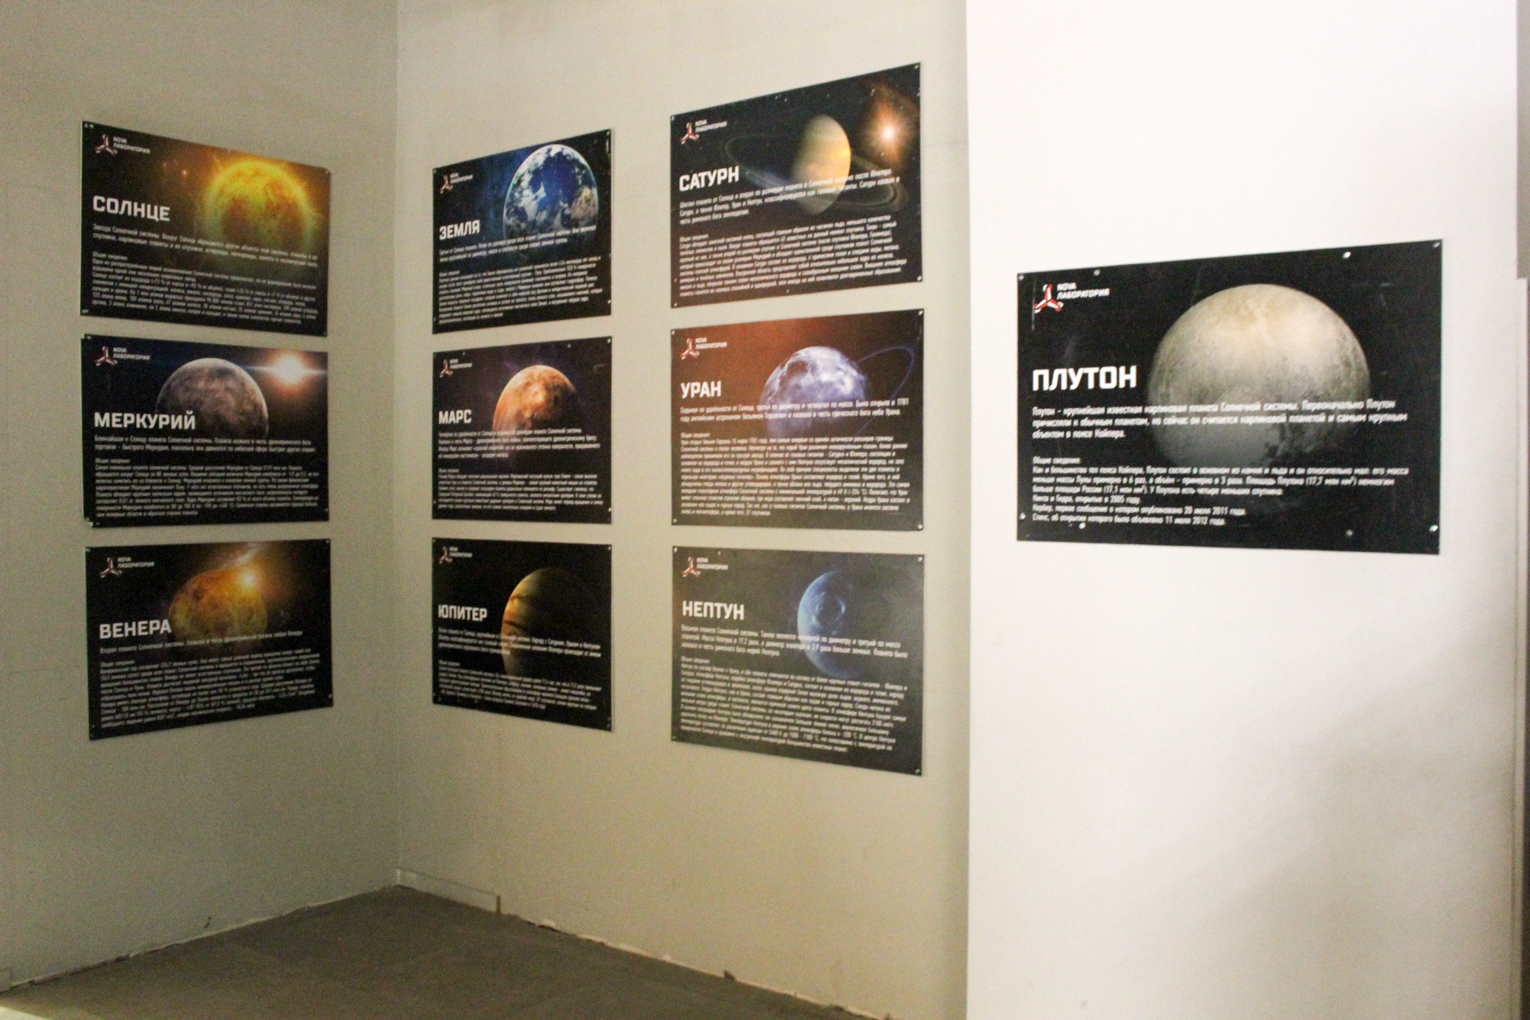 Шоу-выставка "Вселенная инопланетян"